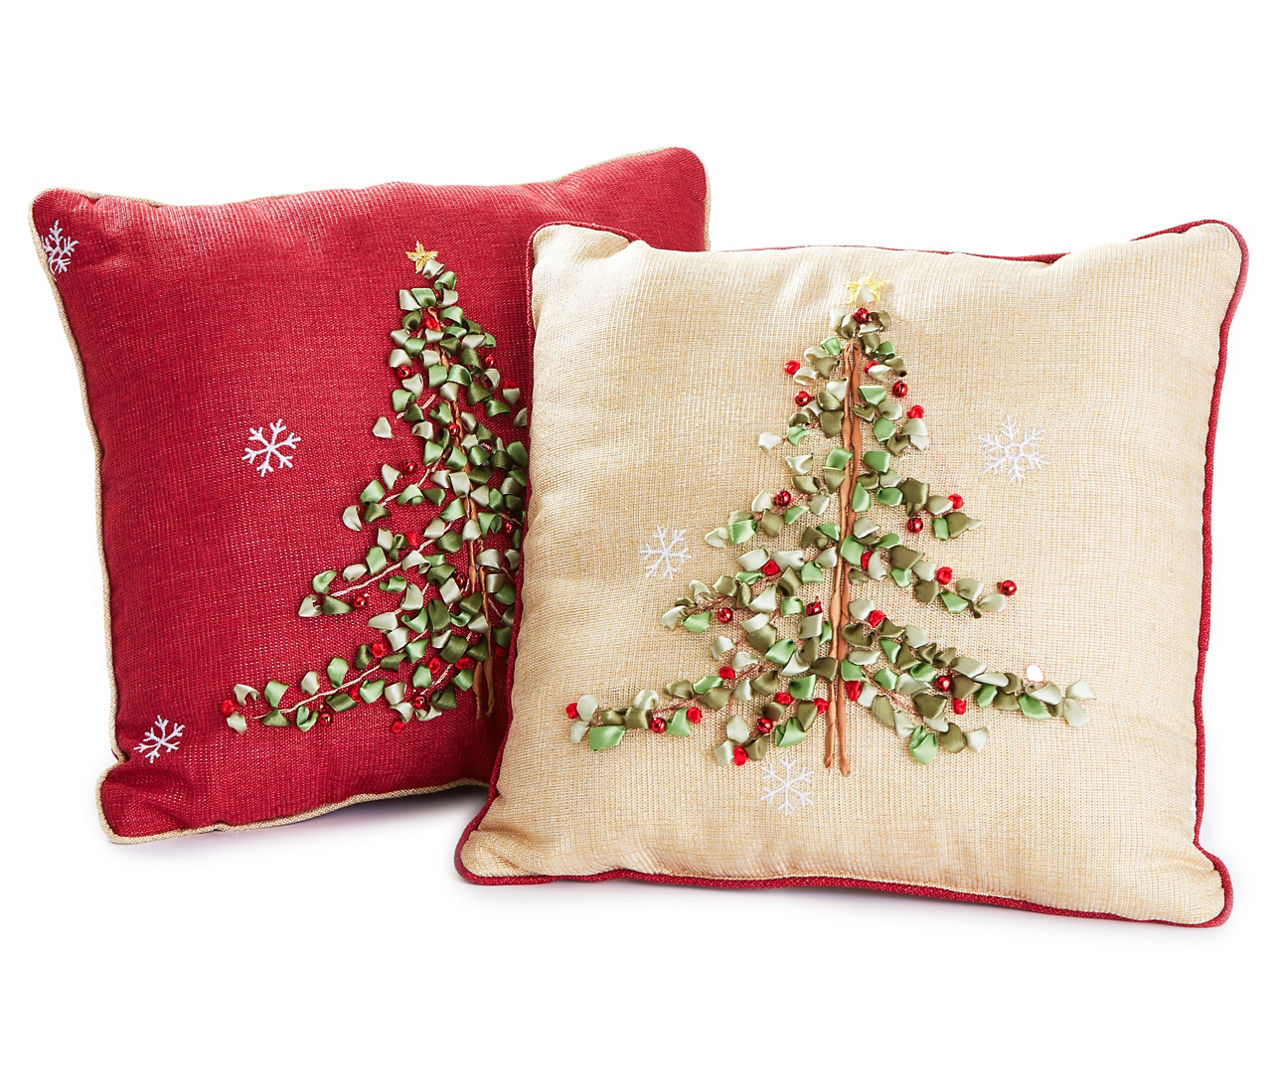 Holiday Decorative Pillows Big Lots